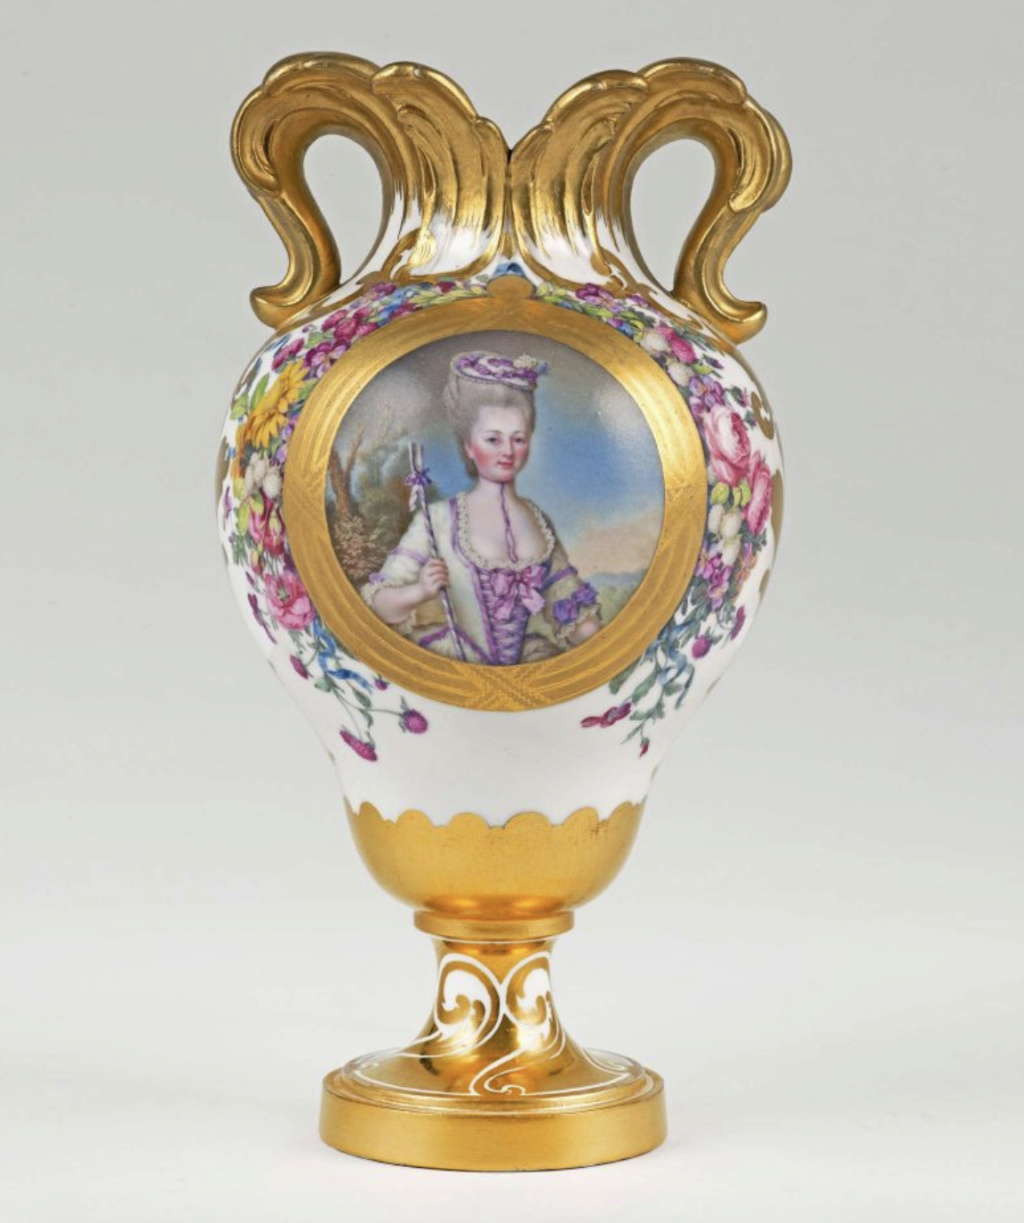 Le premier vase en porcelaine de Sèvres acheté par Marie-Antoinette en 1774 Capt3349